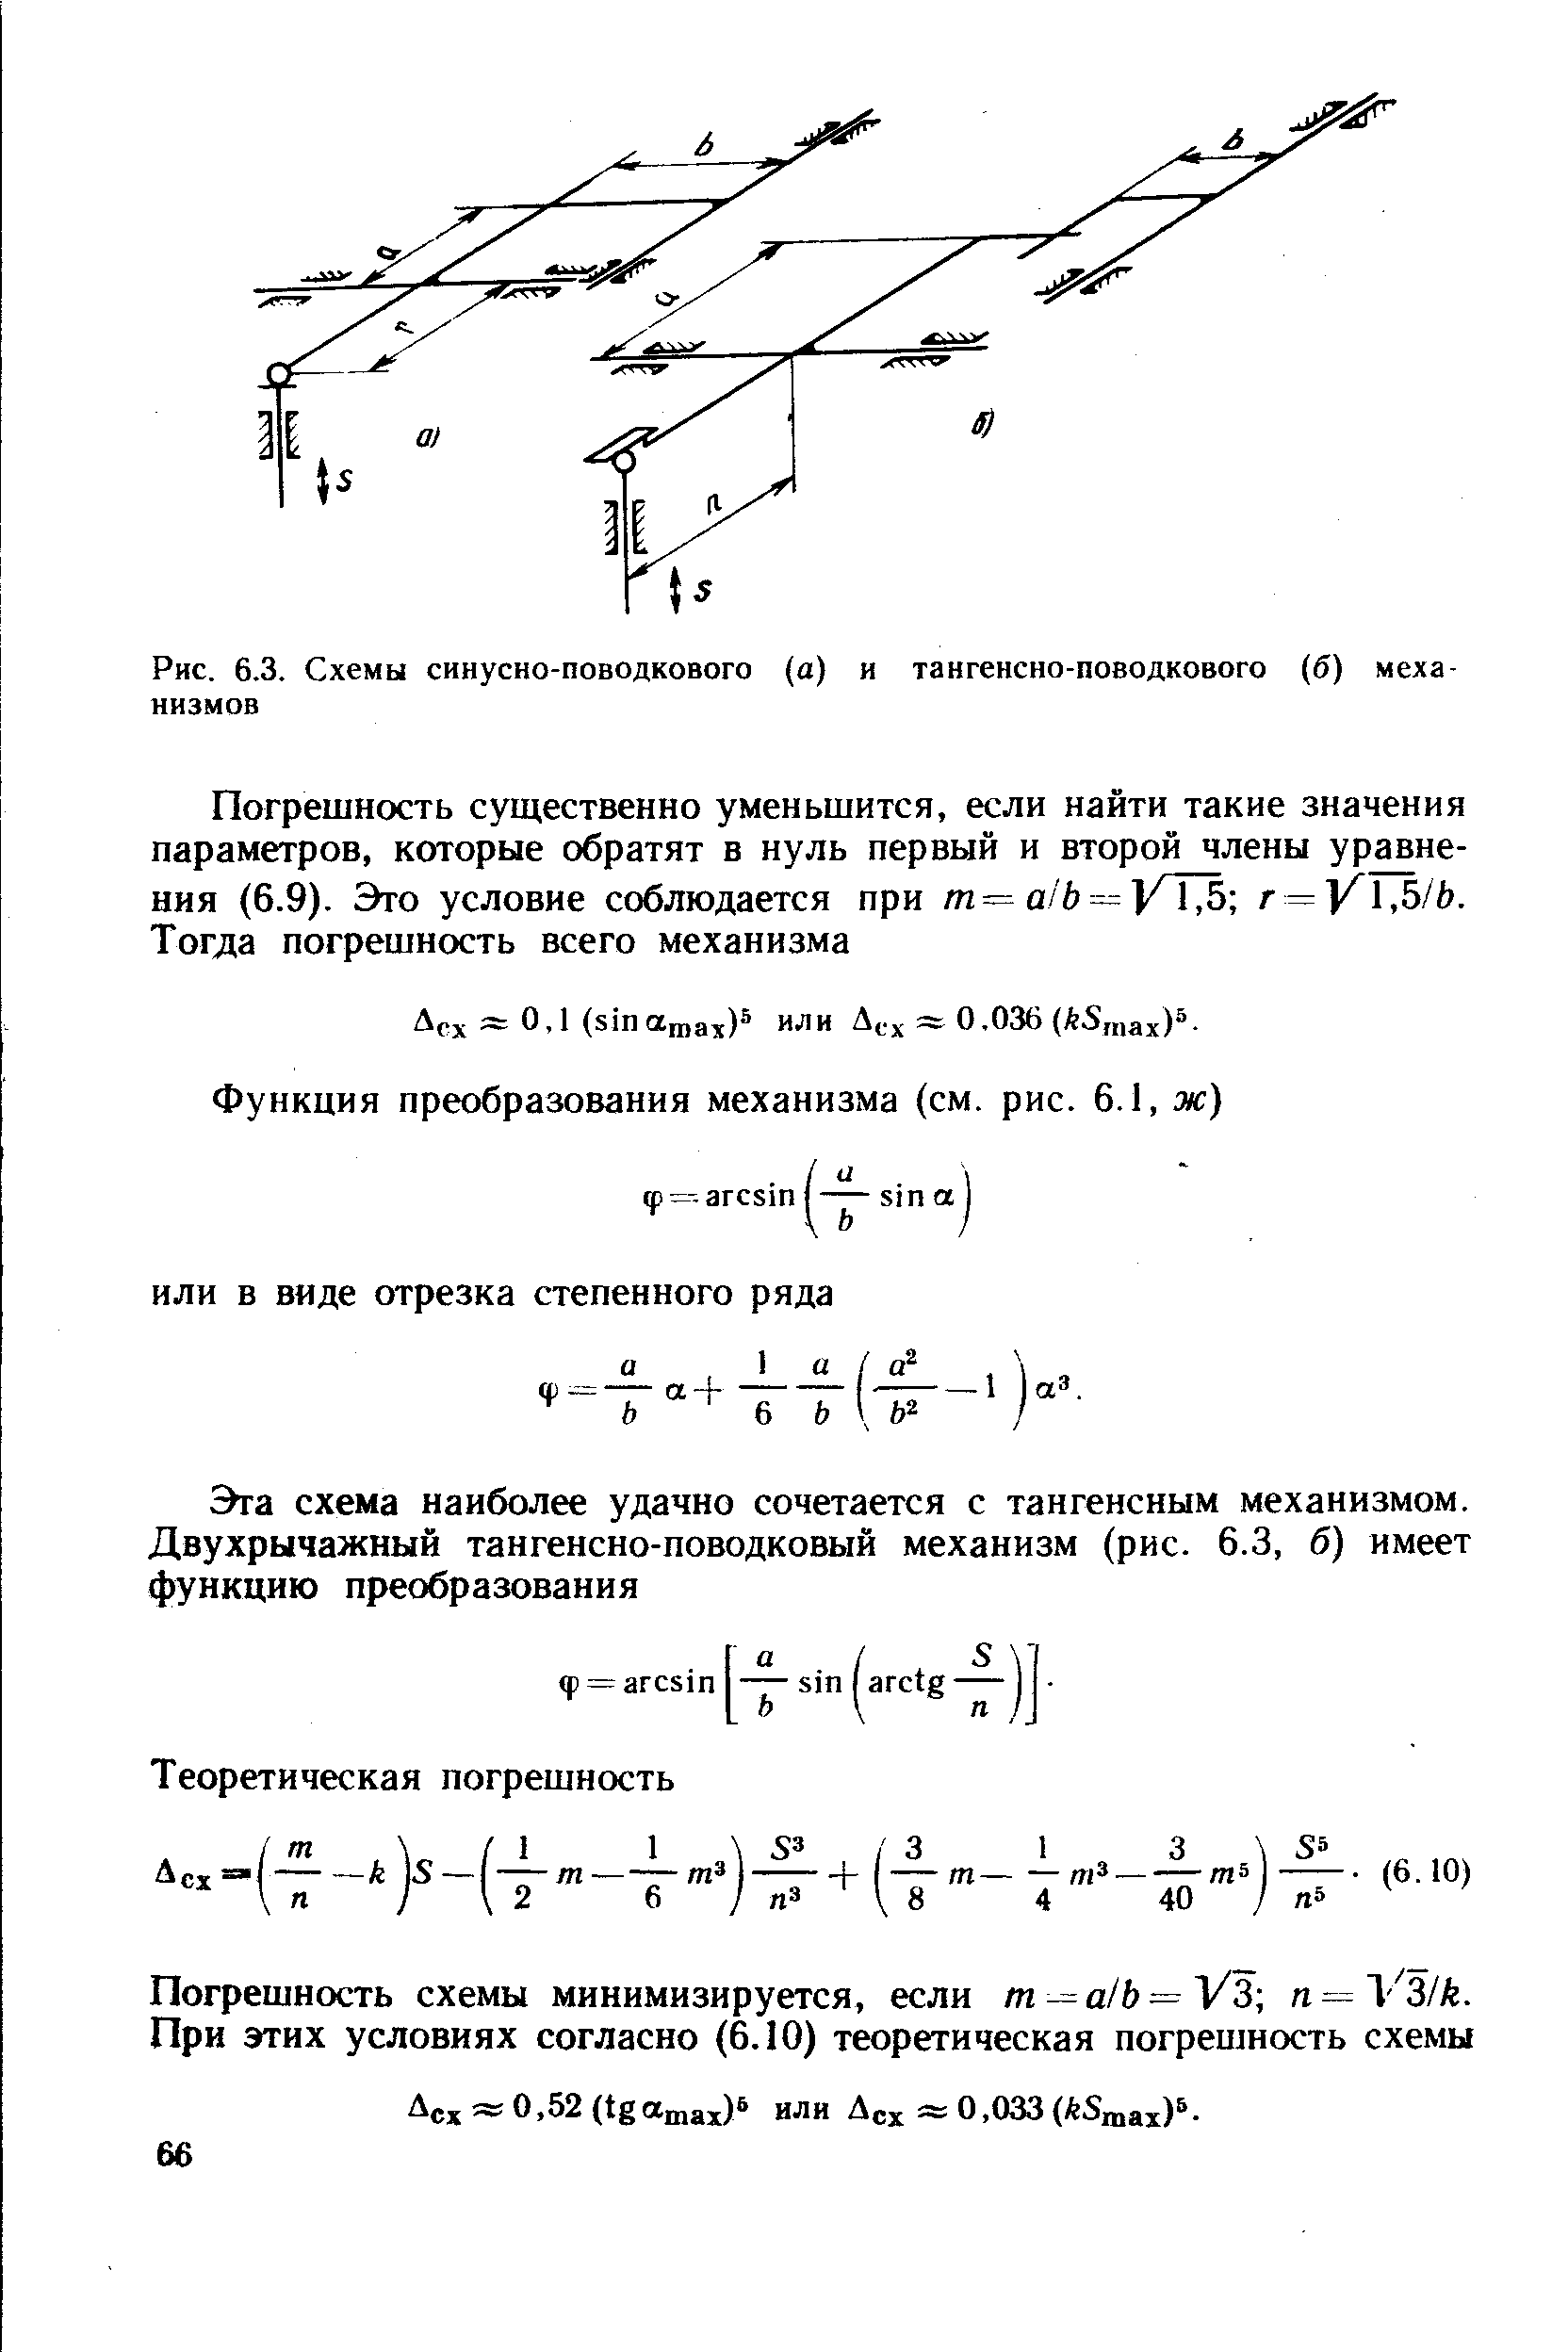 Рис. 6.3. Схемы синусно-поводкового (а) и тангенсно-поводкового (б) механизмов
